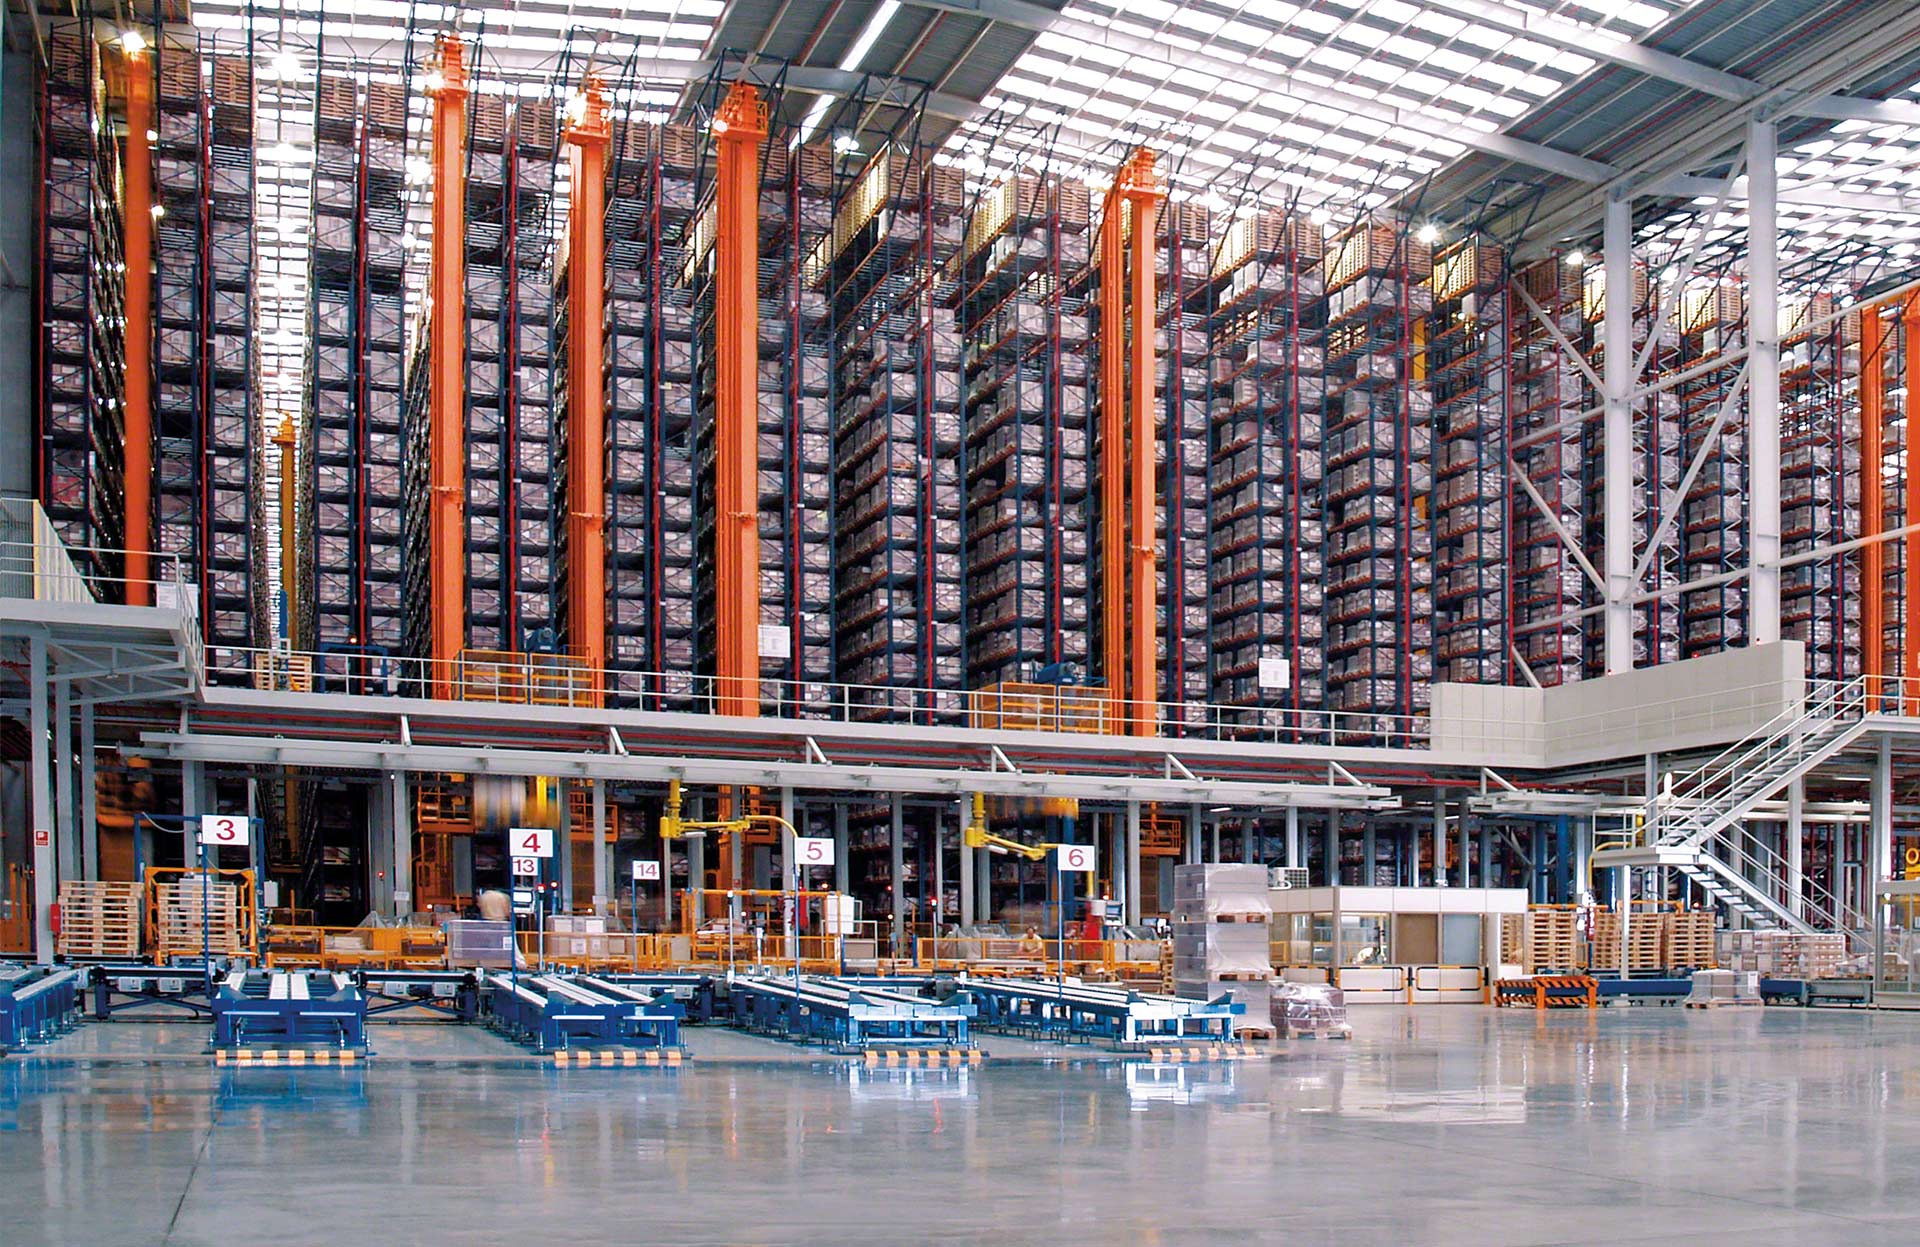 Il trasloelevatore per magazzini automatici incrementa la produttività automatizzando il deposito e l’estrazione dei pallet